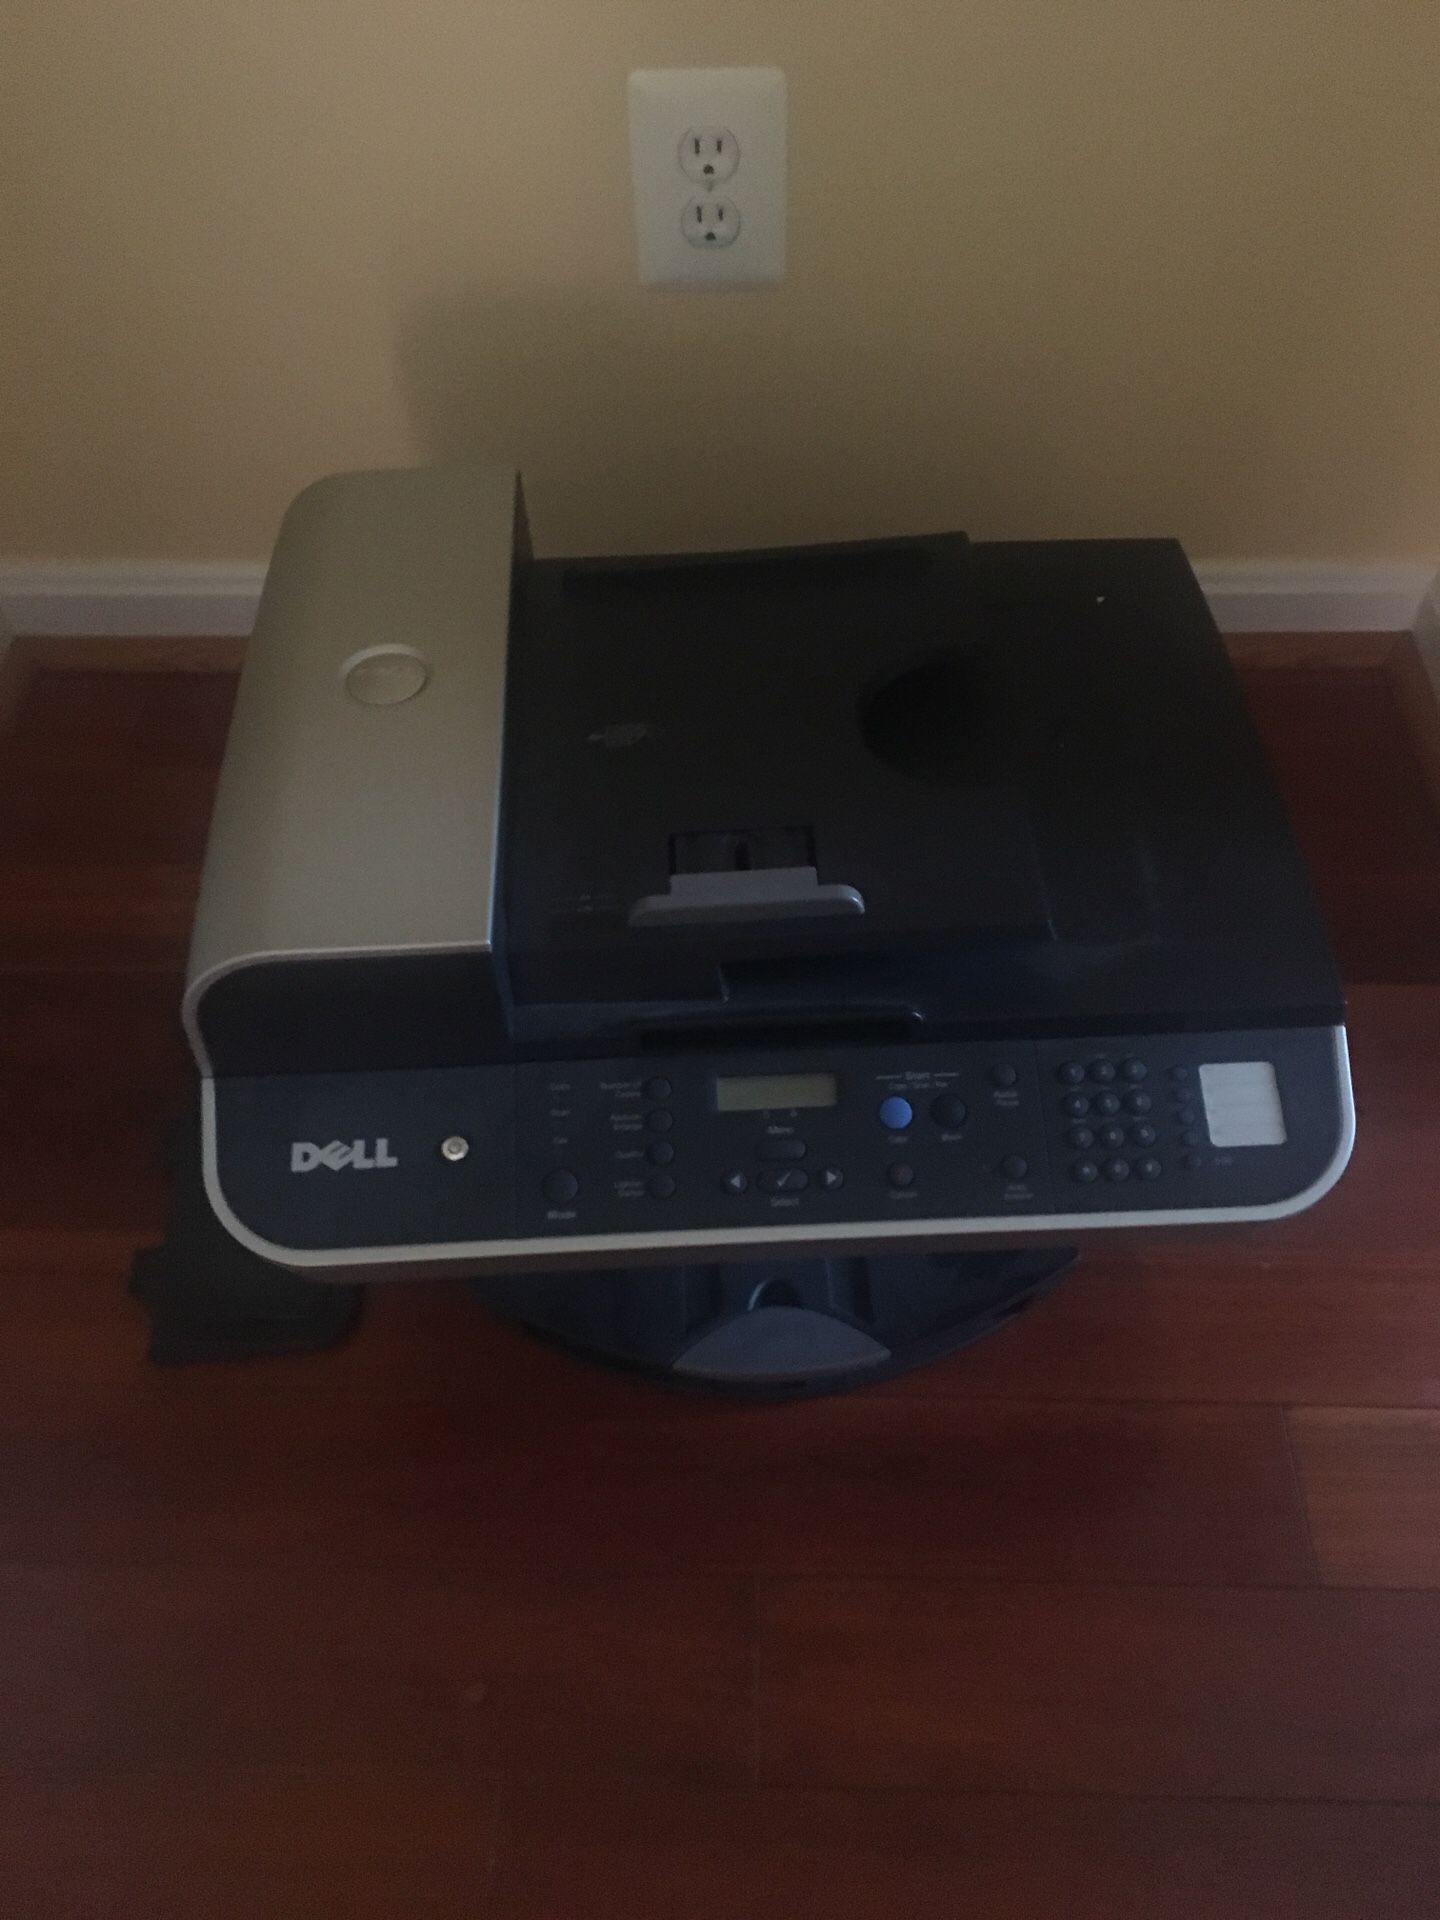 Dell Ink printer, copier and fax machine